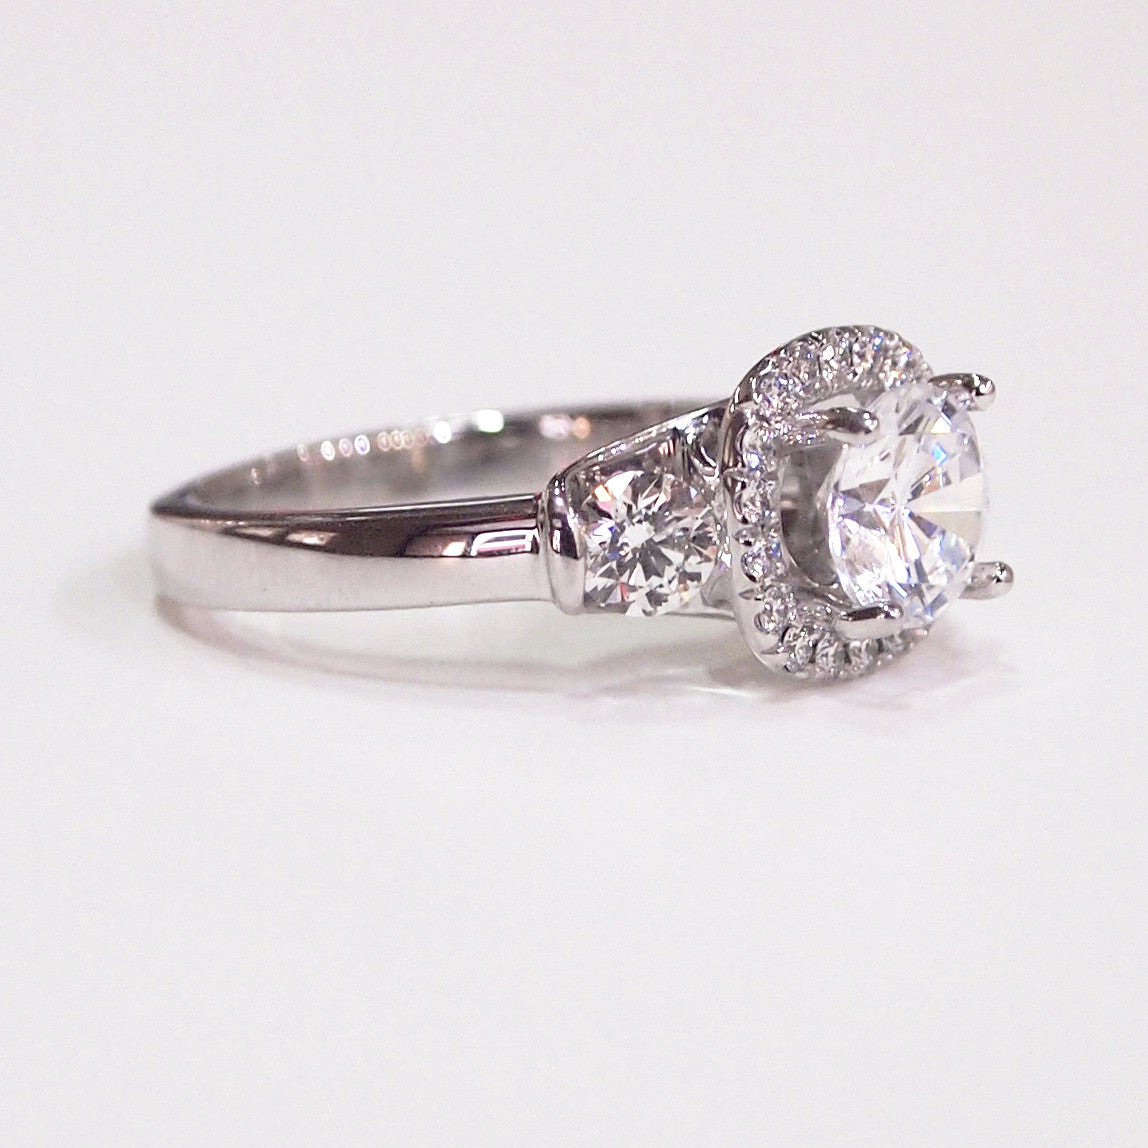 Lazare Kaplan 18K White Gold "Raphaella" Diamond Engagement Ring